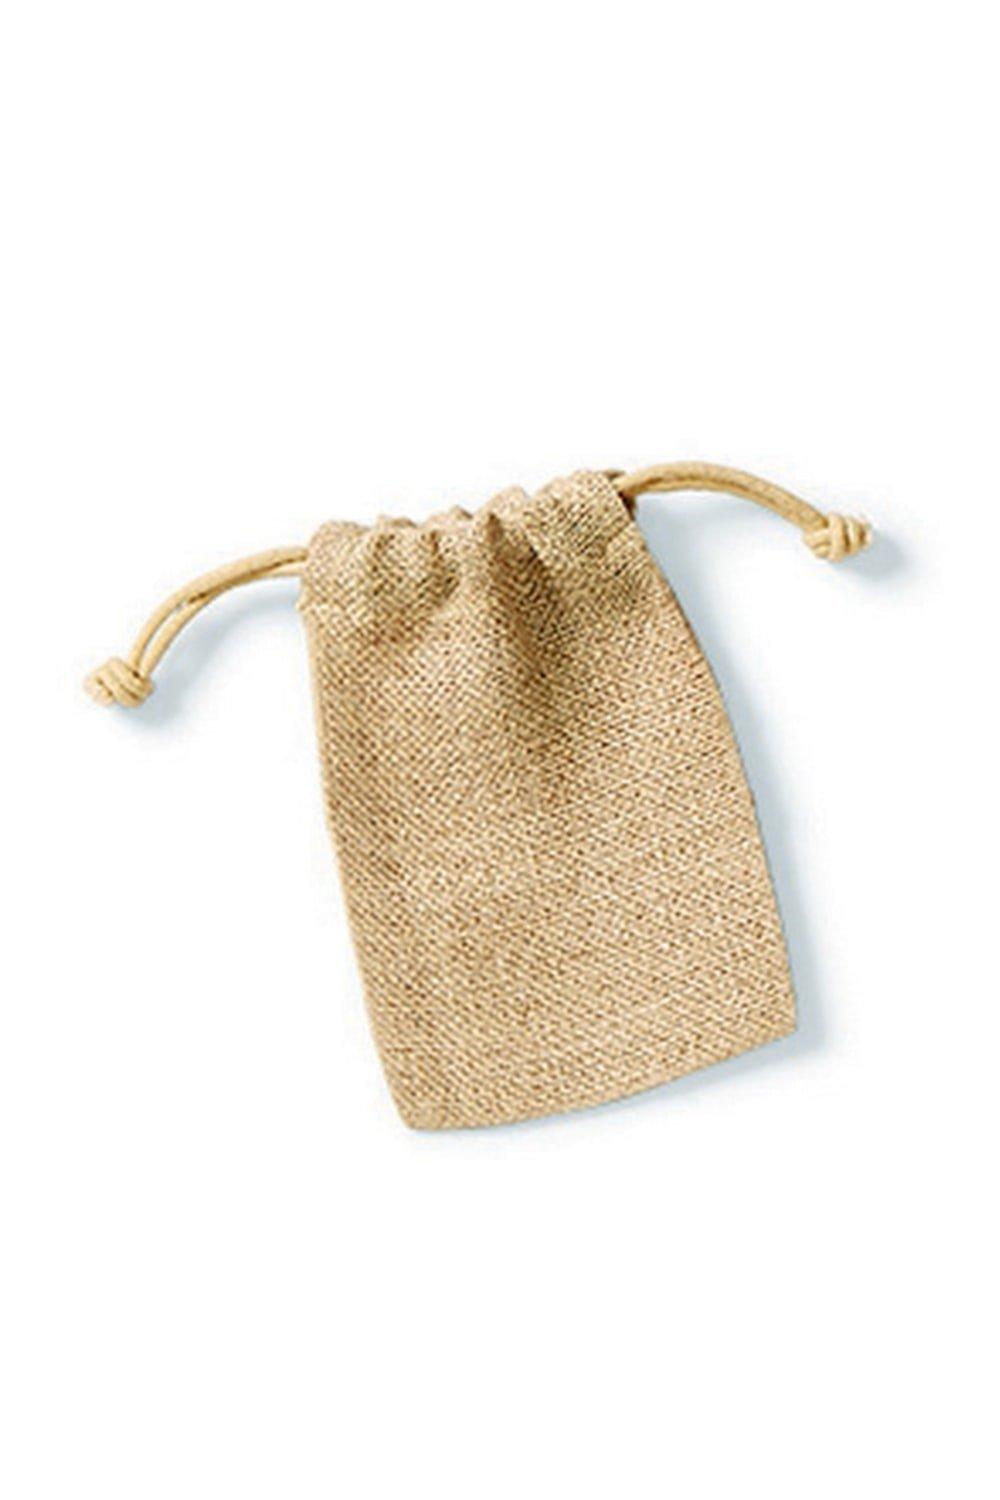 Простая сумка для вещей с застежкой из джутовой веревки Westford Mill, обнаженная магнит круг 1 8 х 1 8 х 0 3 см 10 штук